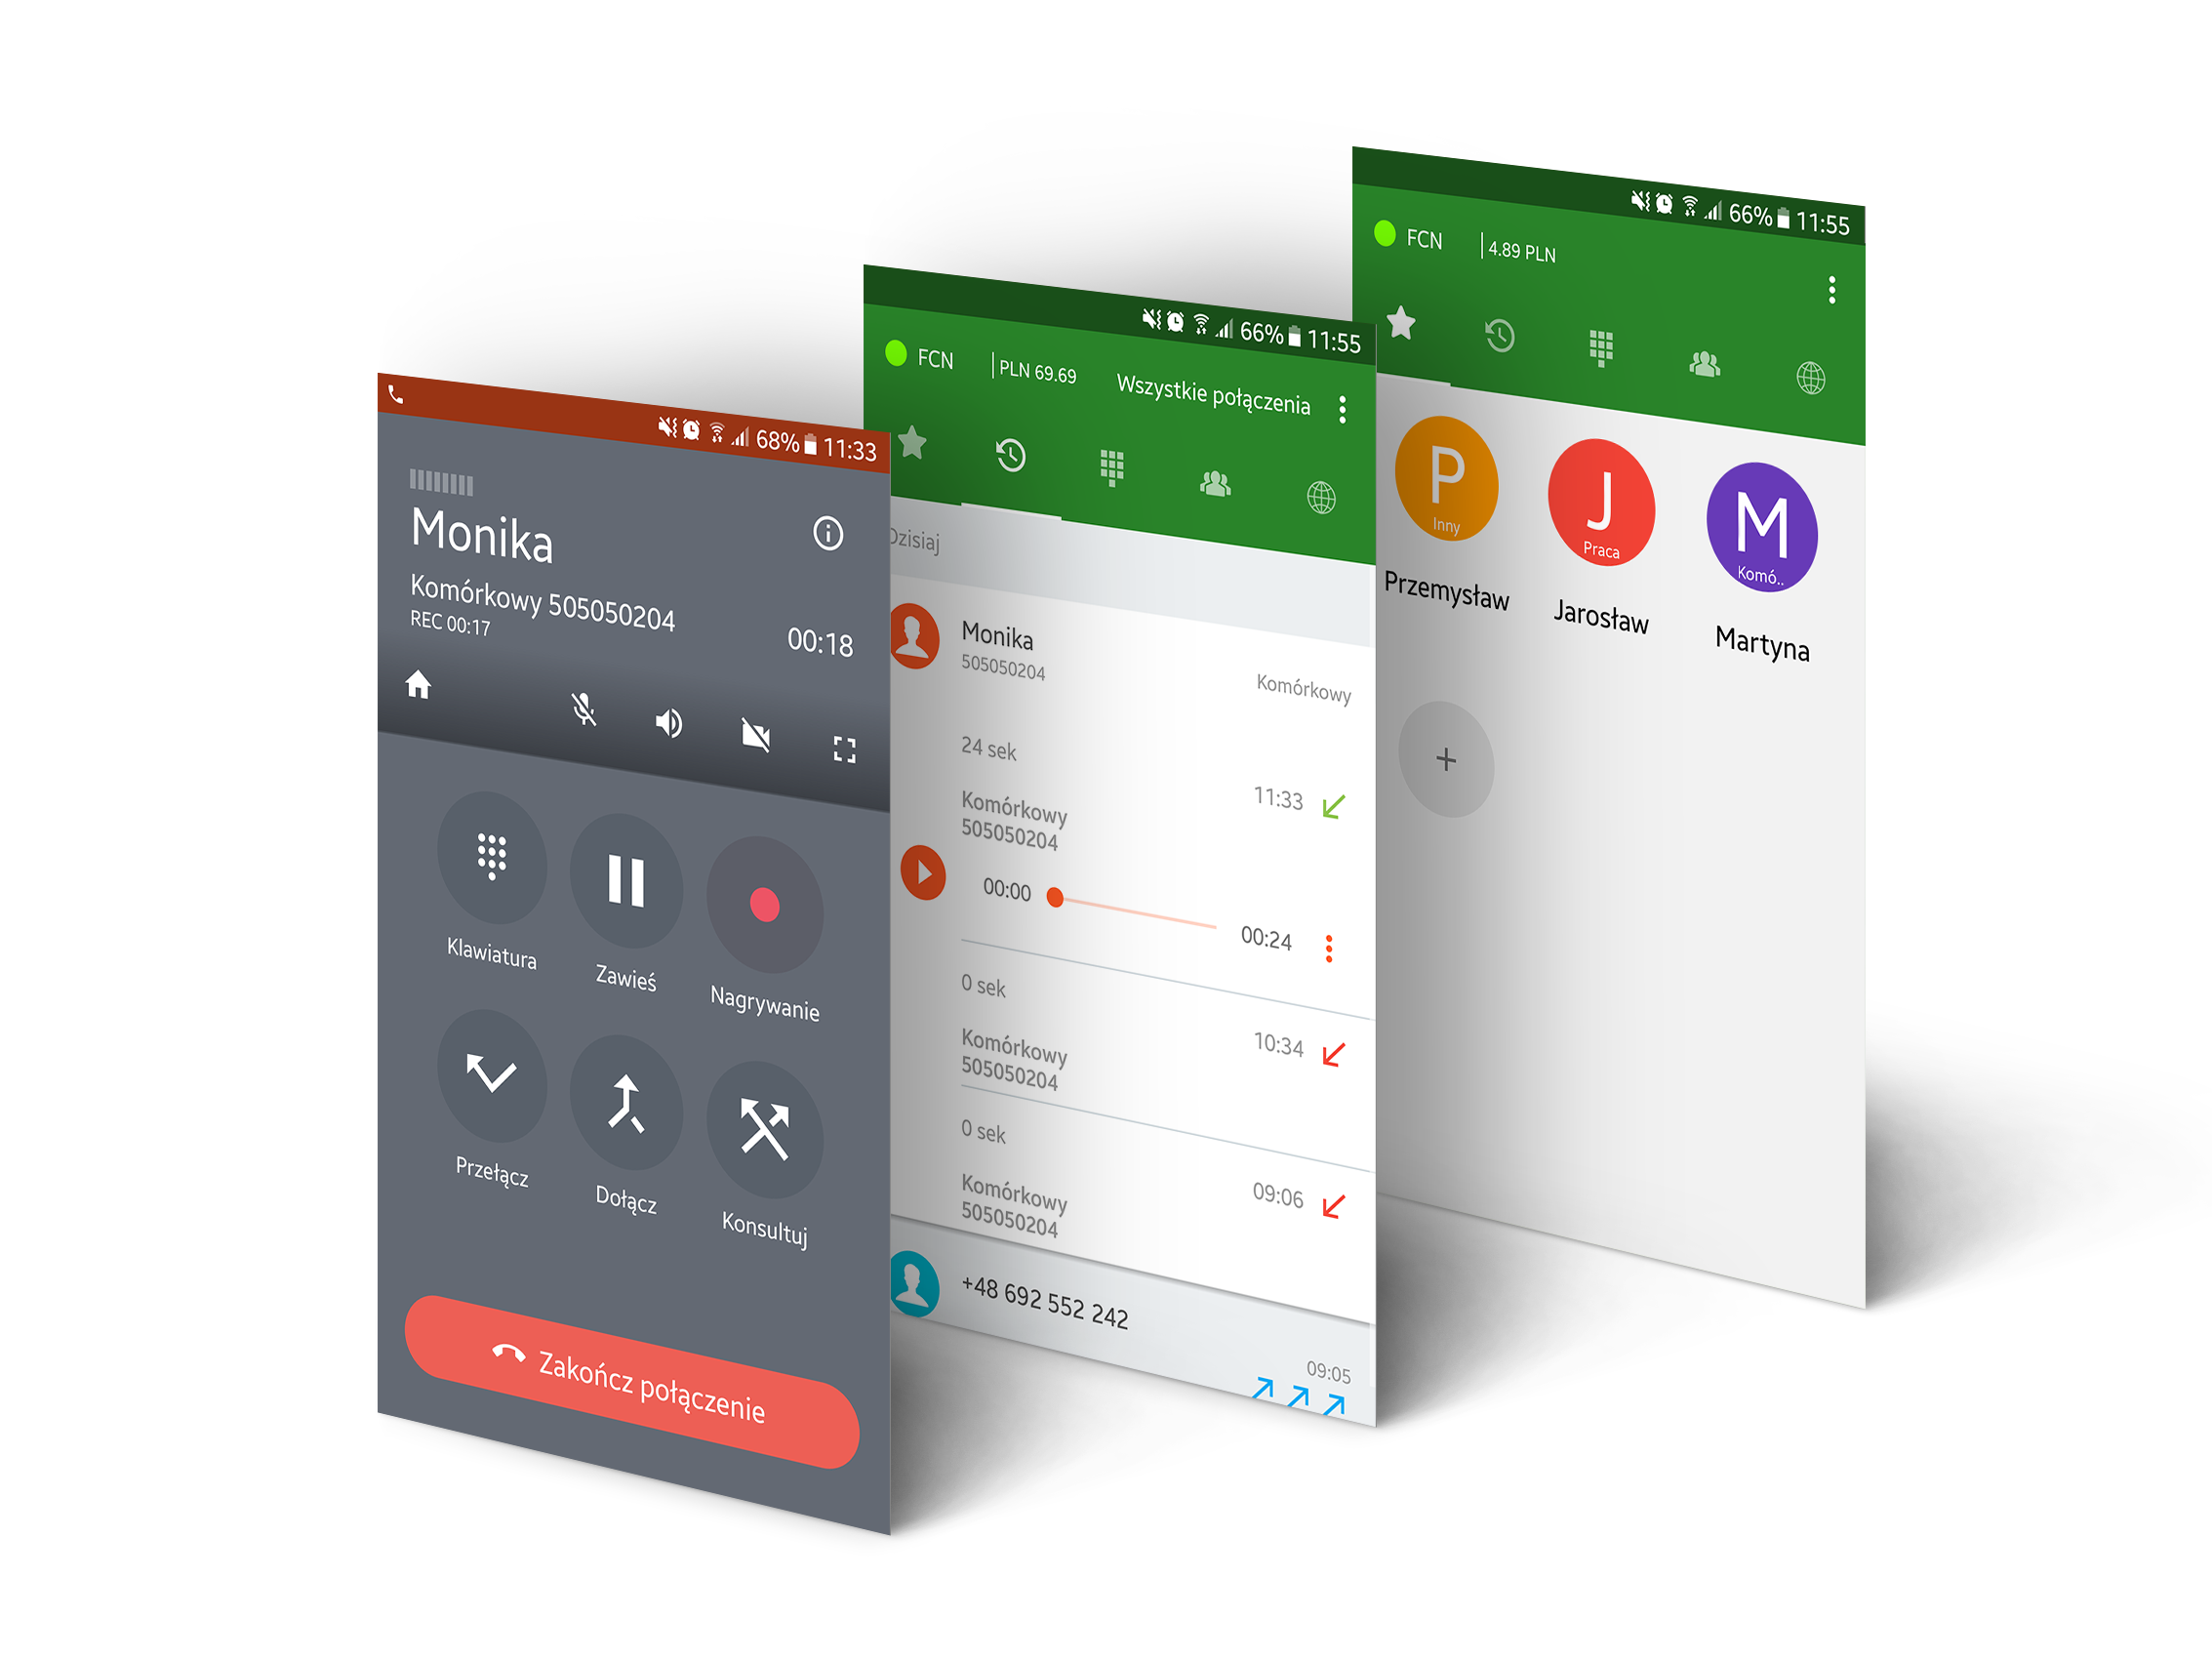 Ekrany aplikacji Telefon FCN: ekran rozmowy z opcjami sekretariatu, historii z odtwarzaniem rozmów i ulubionych kontaktów